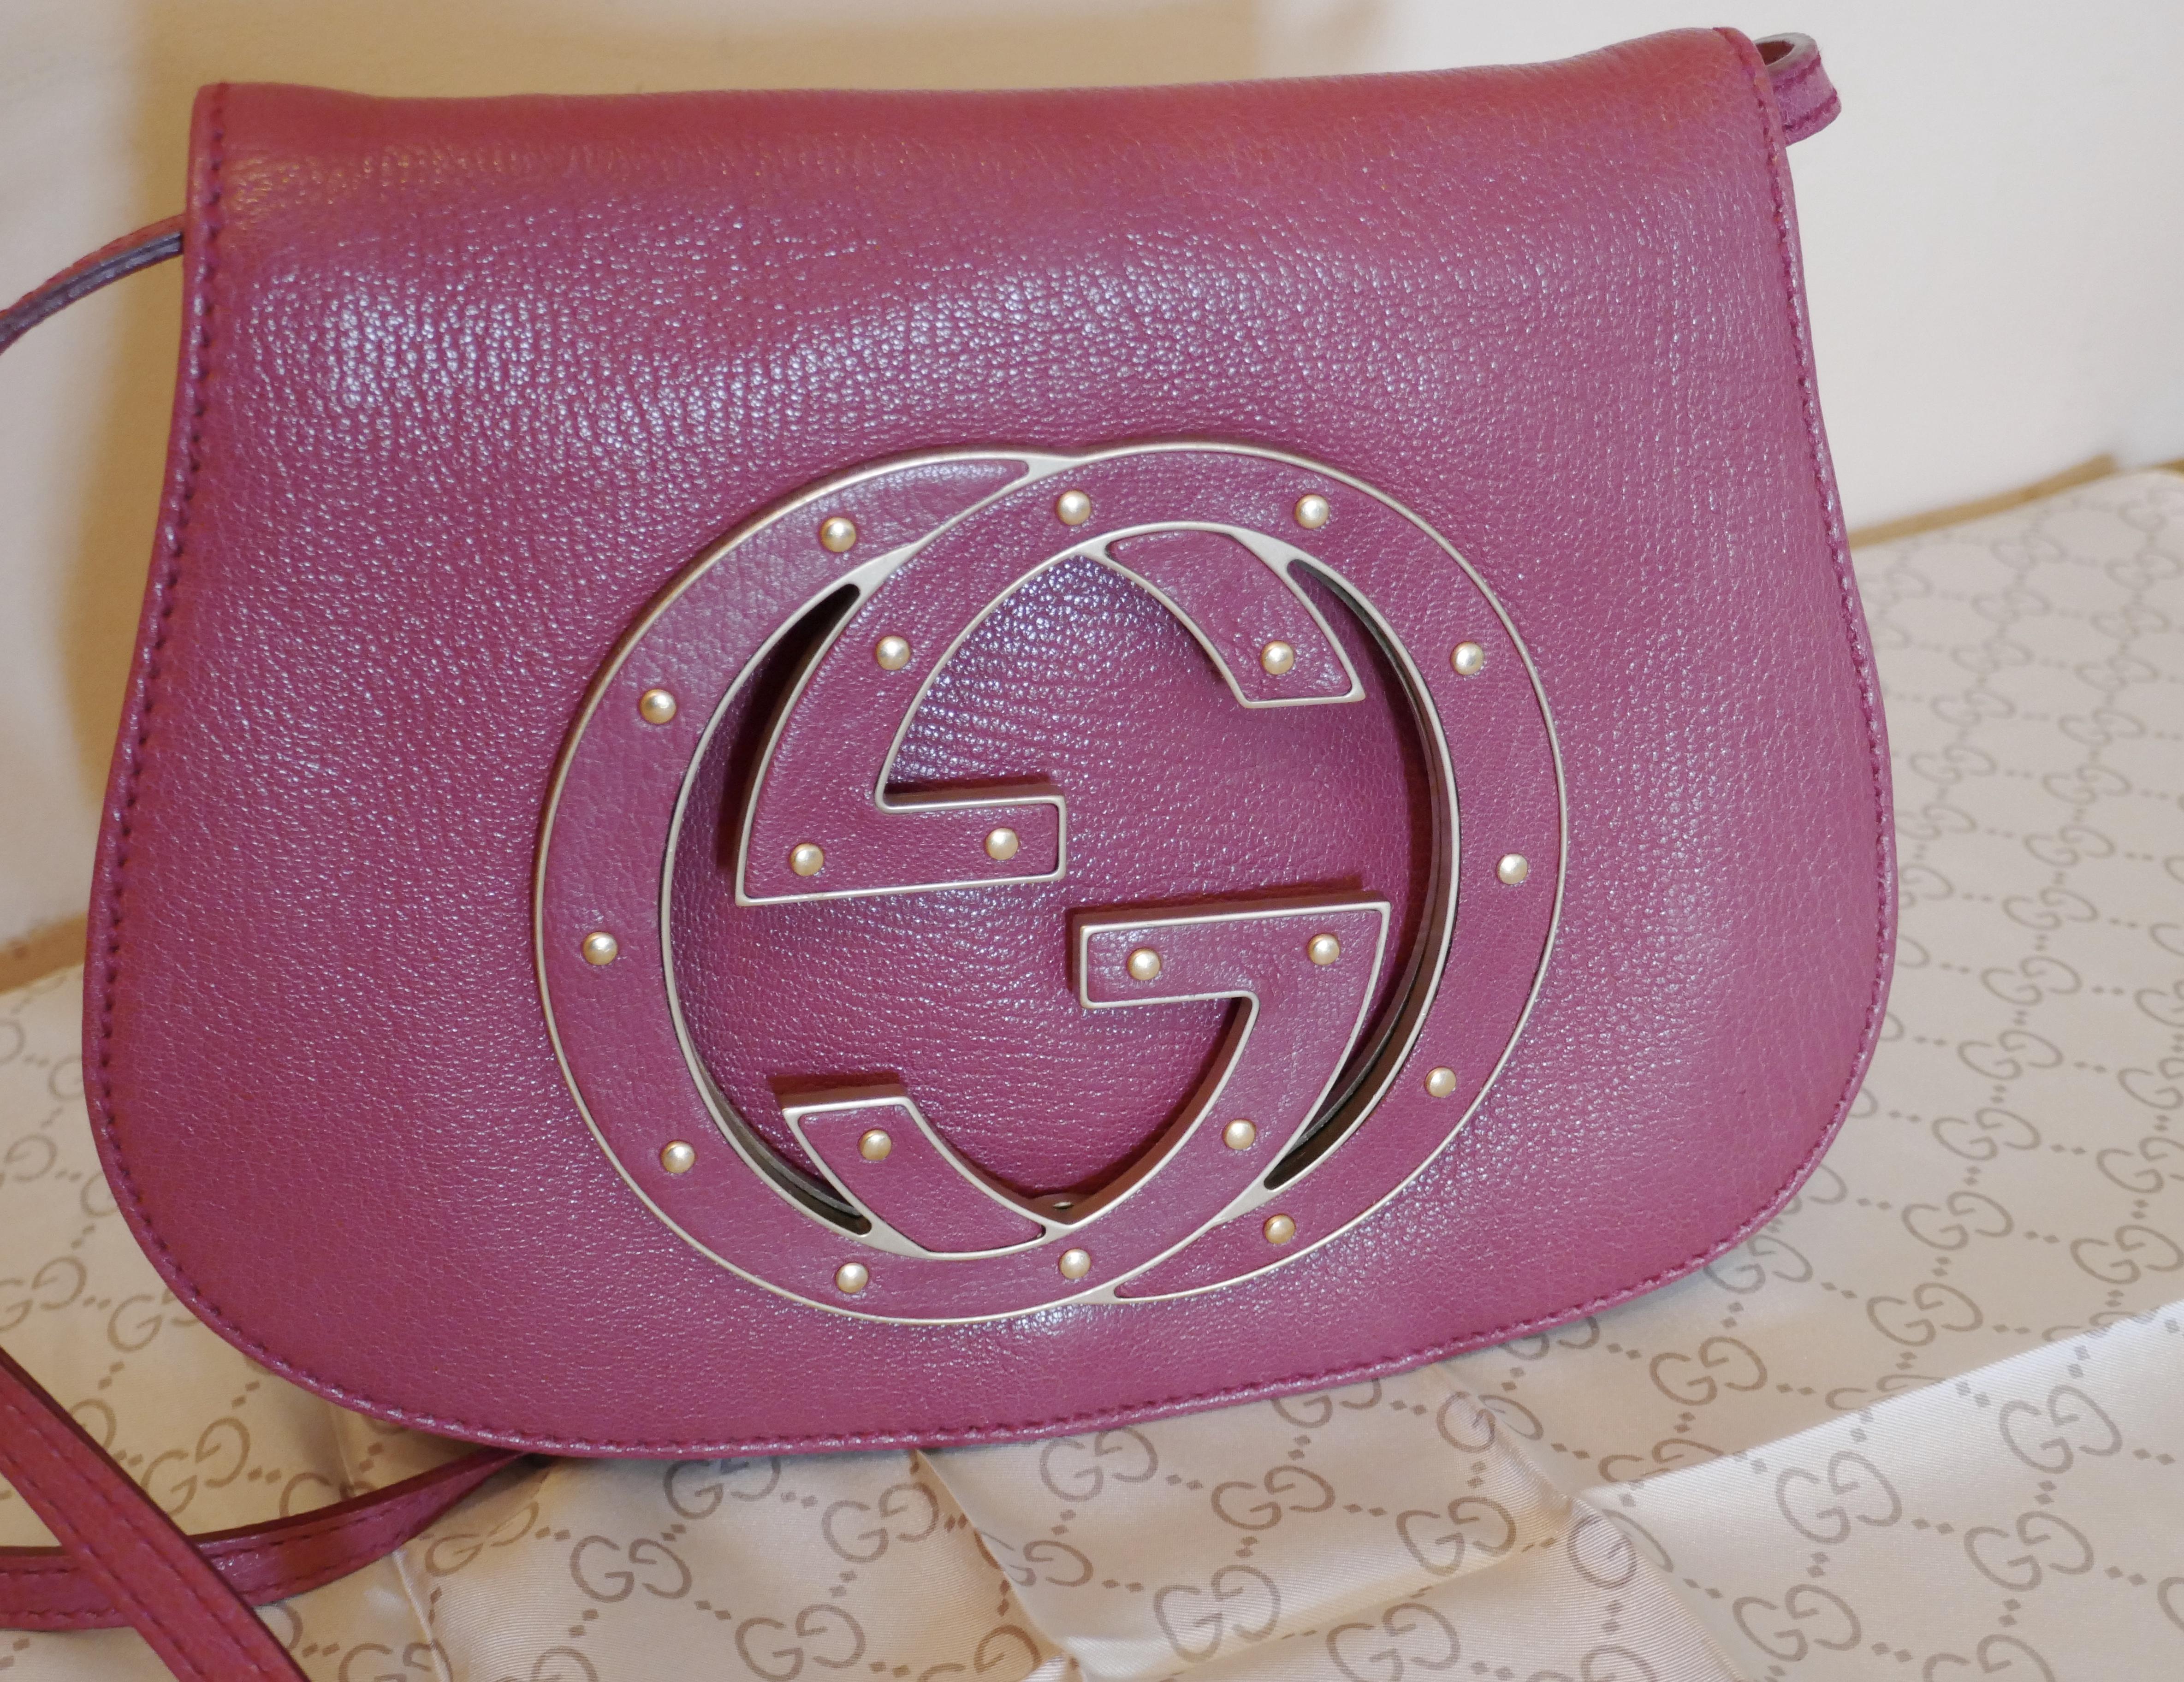 Rare Gucci Soho Pink Leather Messenger Shoulder Bag Purse   For Sale 8